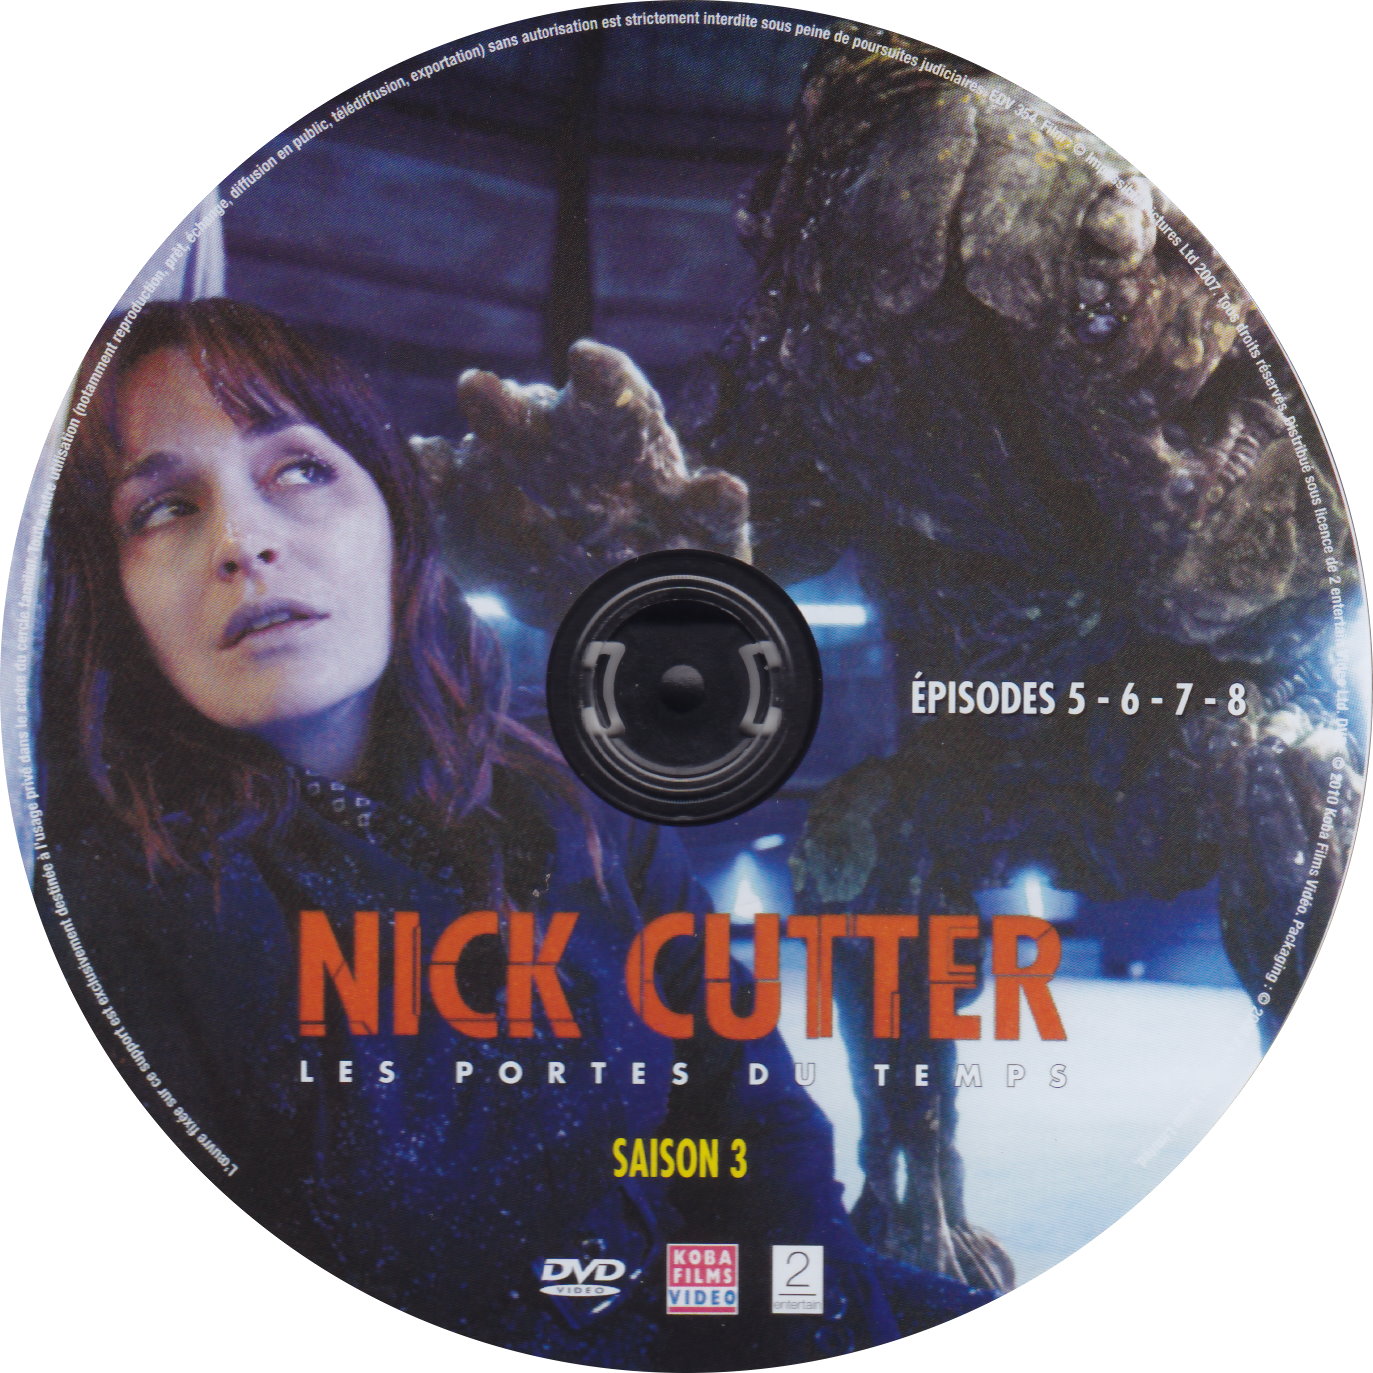 Nick Cutter Les portes du temps Saison 3 DISC 2